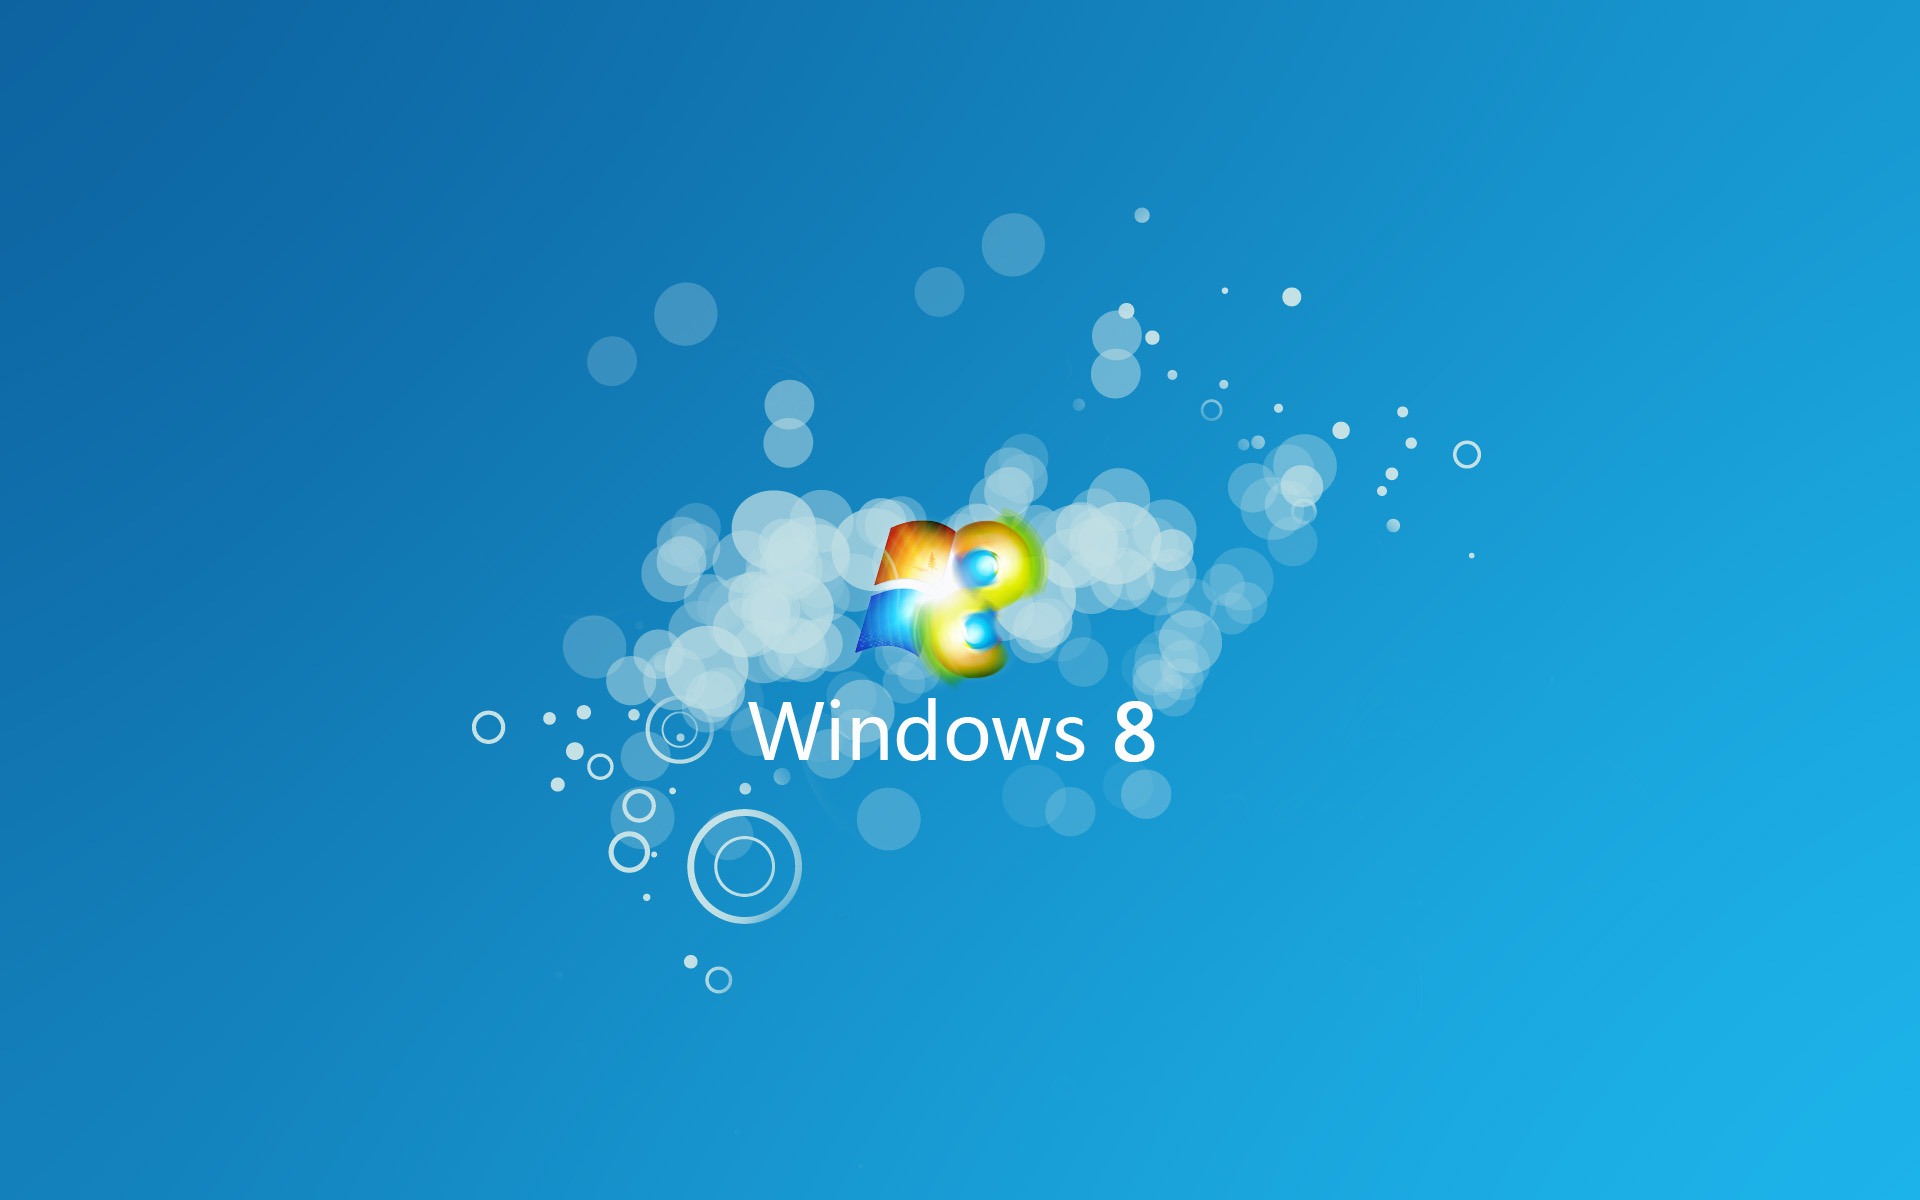 Windows 8 theme wallpaper (1) #9 - 1920x1200